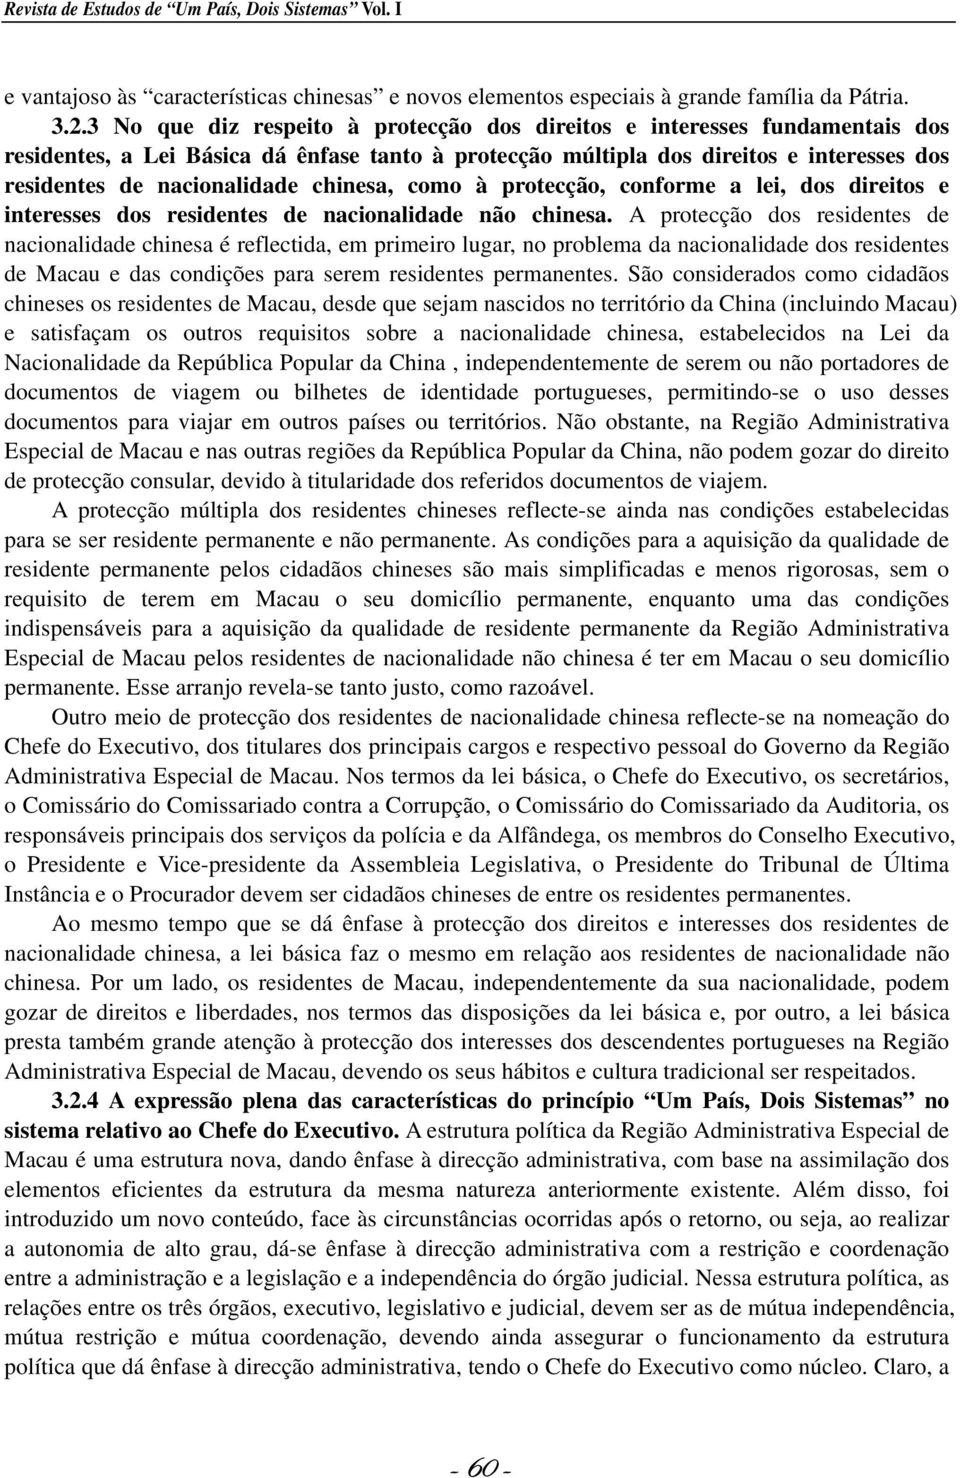 chinesa, como à protecção, conforme a lei, dos direitos e interesses dos residentes de nacionalidade não chinesa.